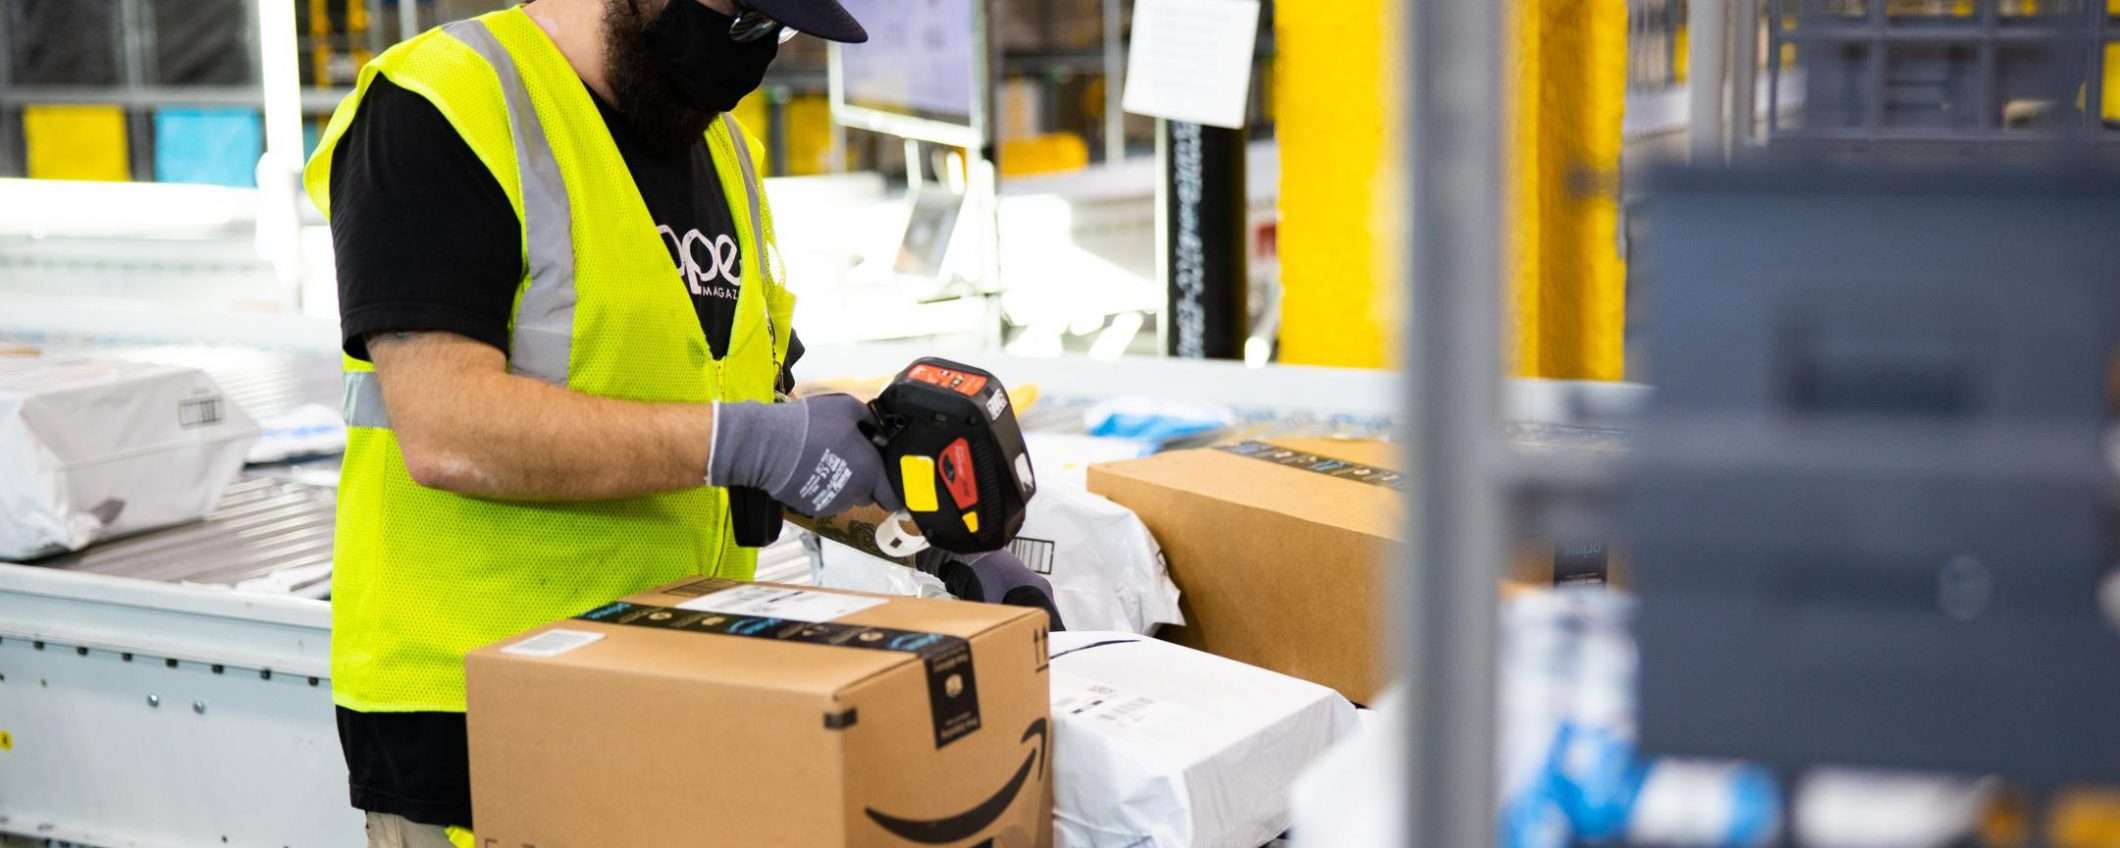 Amazon, visite guidate nei centri di distribuzione